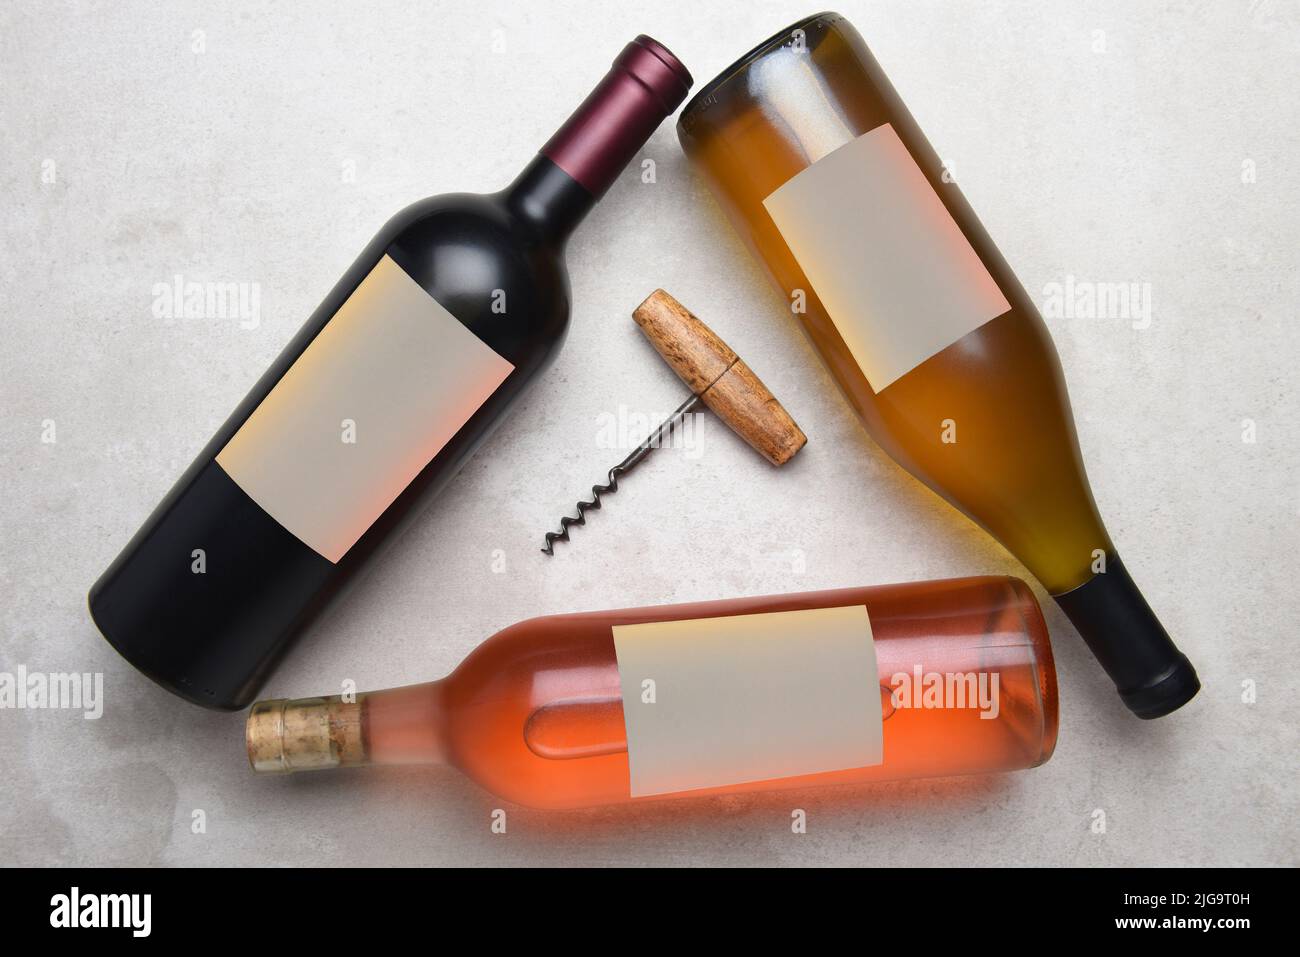 Cabernet, Rose, Chardonnay: Vista aérea de un grupo de tres botellas diferentes con etiquetas en blanco dispuestas en un triángulo con un sacacorchos en el midd Foto de stock